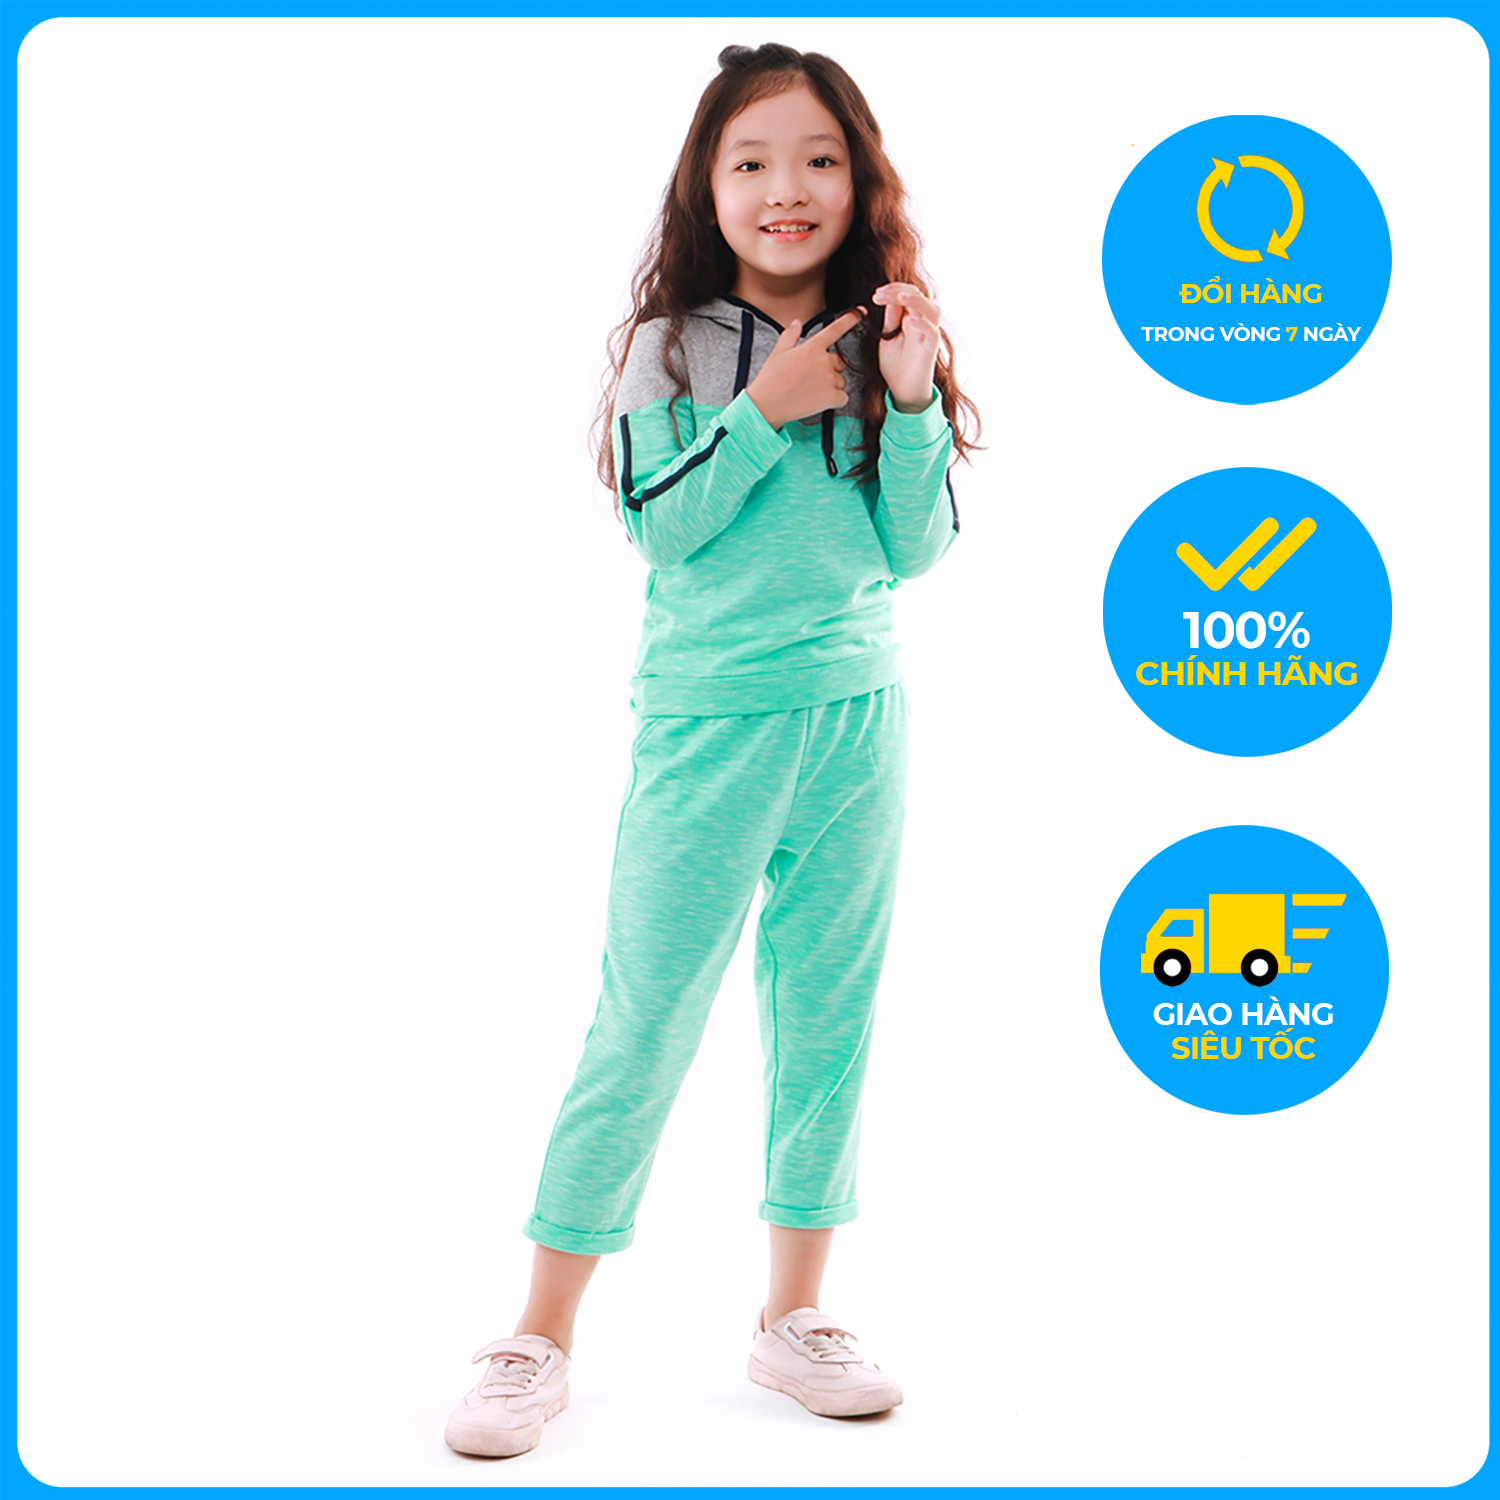 Bộ thu đông cho bé gái KM9040, Hàng Việt Nam chất lượng cao, chất liệu Cotton cao cấp, cực mềm mại ấm áp, an toàn làn da cho bé, sản phẩm được sản xuất bởi hãng thời trang Narsis